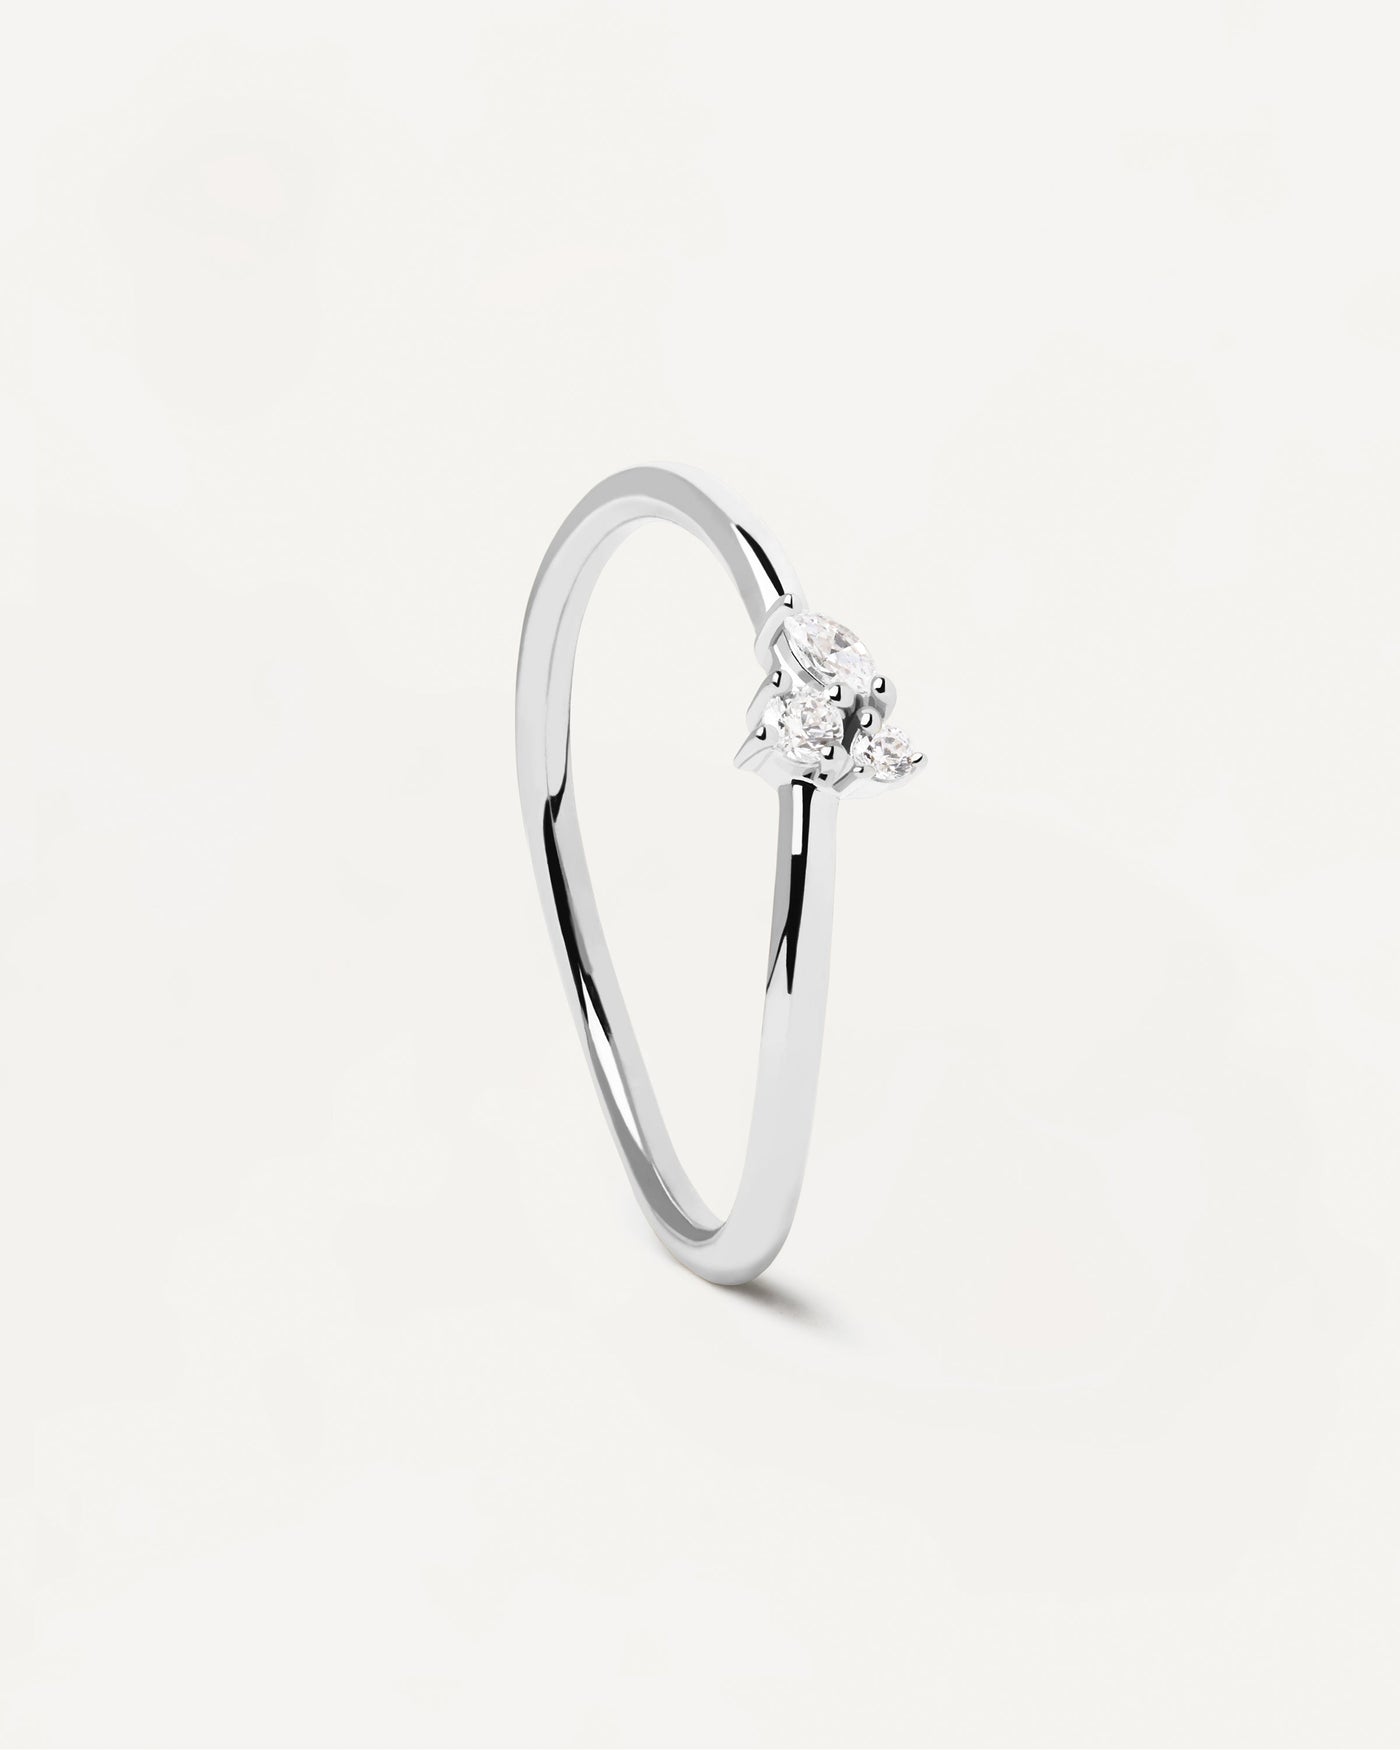 Lua Silberring. Ring aus Sterlingsilber mit filigranen weißen Kristallen. Erhalten Sie die neuesten Produkte von PDPAOLA. Geben Sie Ihre Bestellung sicher auf und erhalten Sie diesen Bestseller.